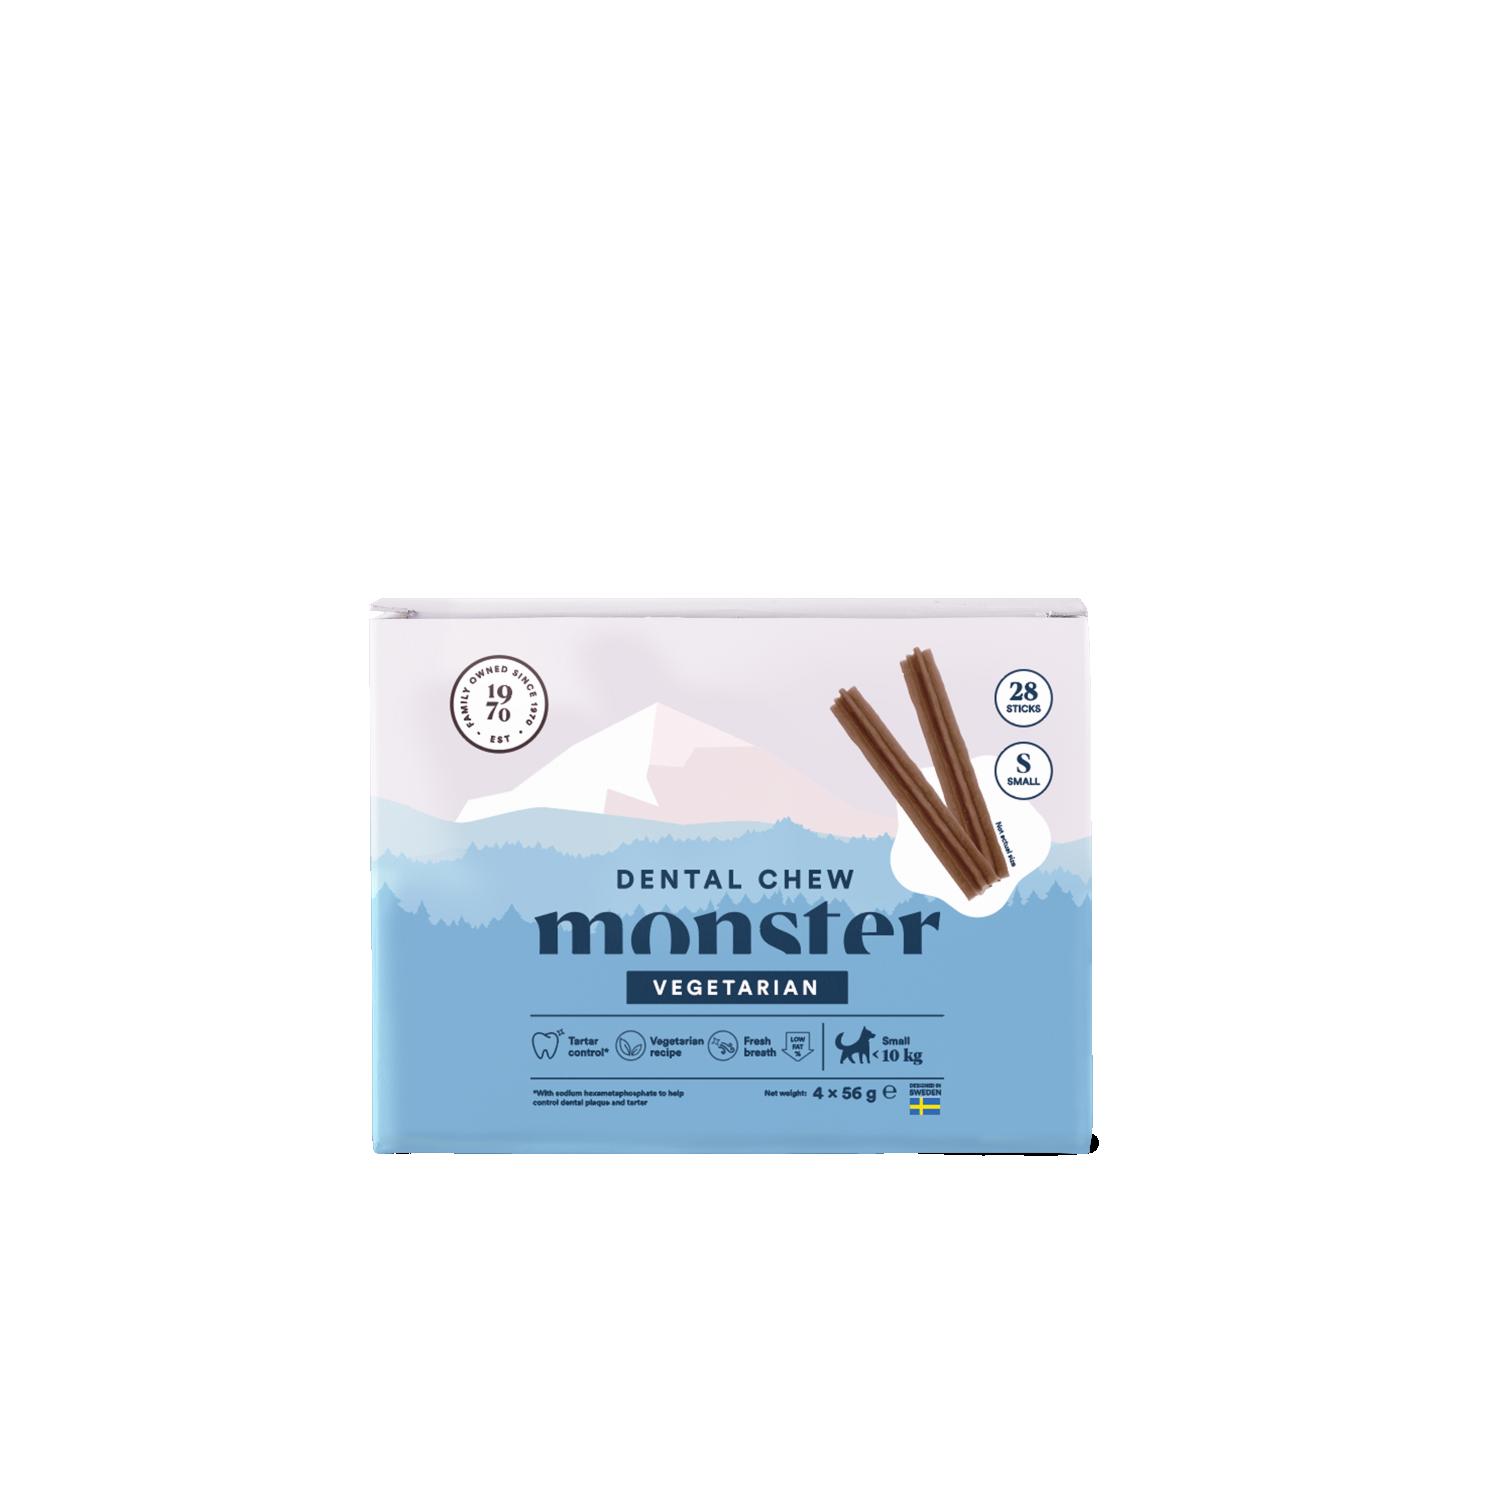 Monster Dog Dental Chew Veg. S Month (28st) 224 g